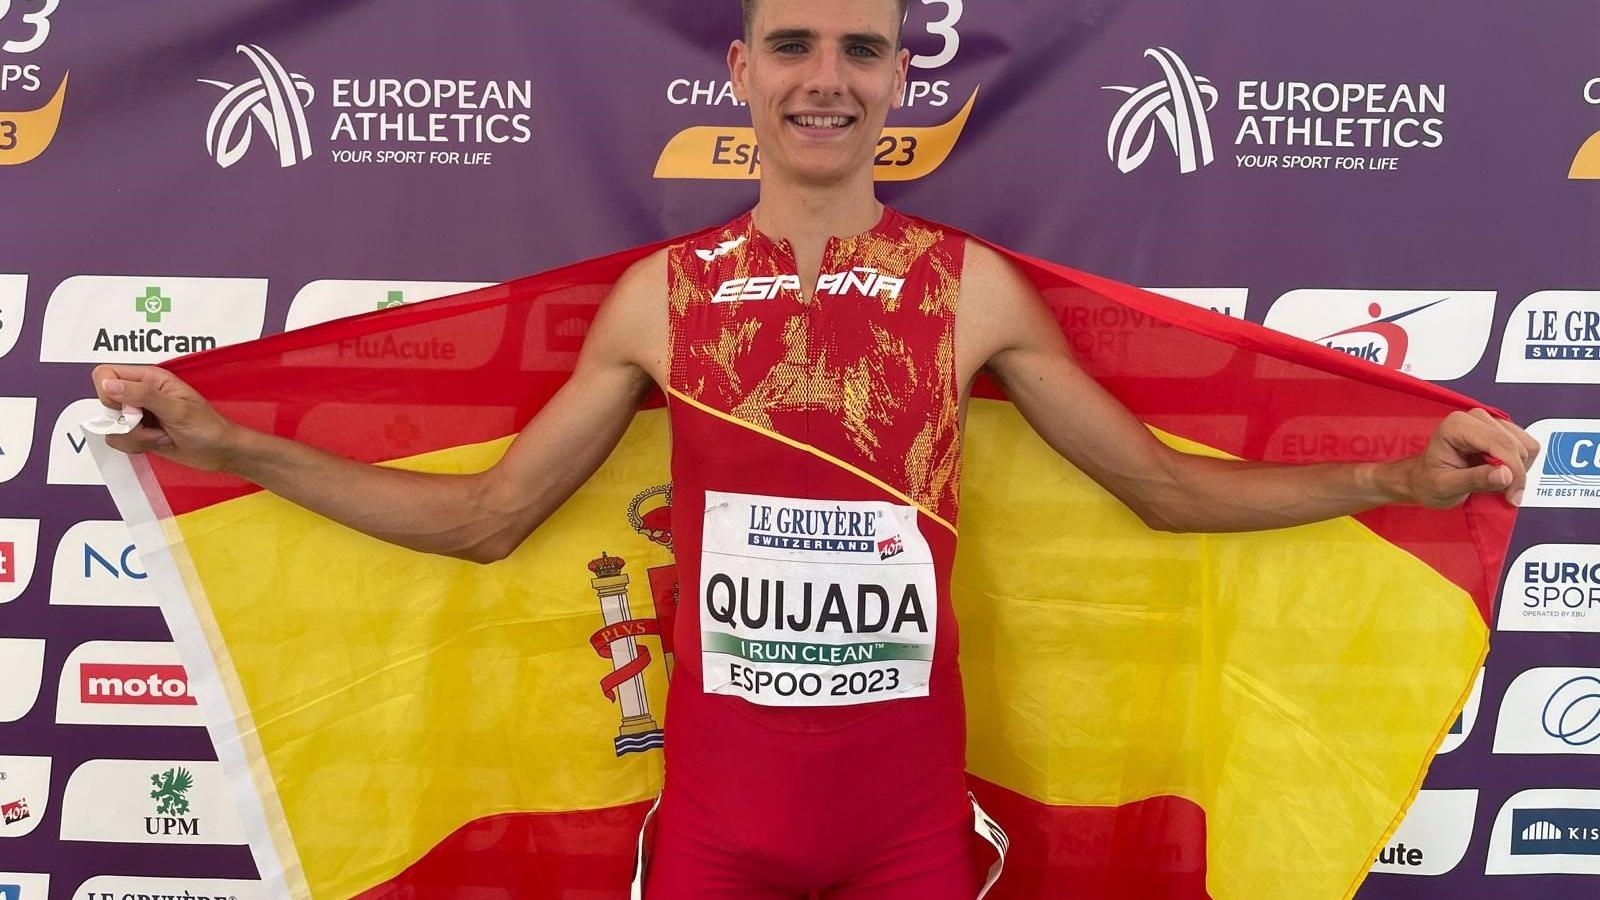 Atletismo.- (Crónica) Alejandro Quijada pone el broche de oro a 11 medallas españolas en el Europeo Sub 23